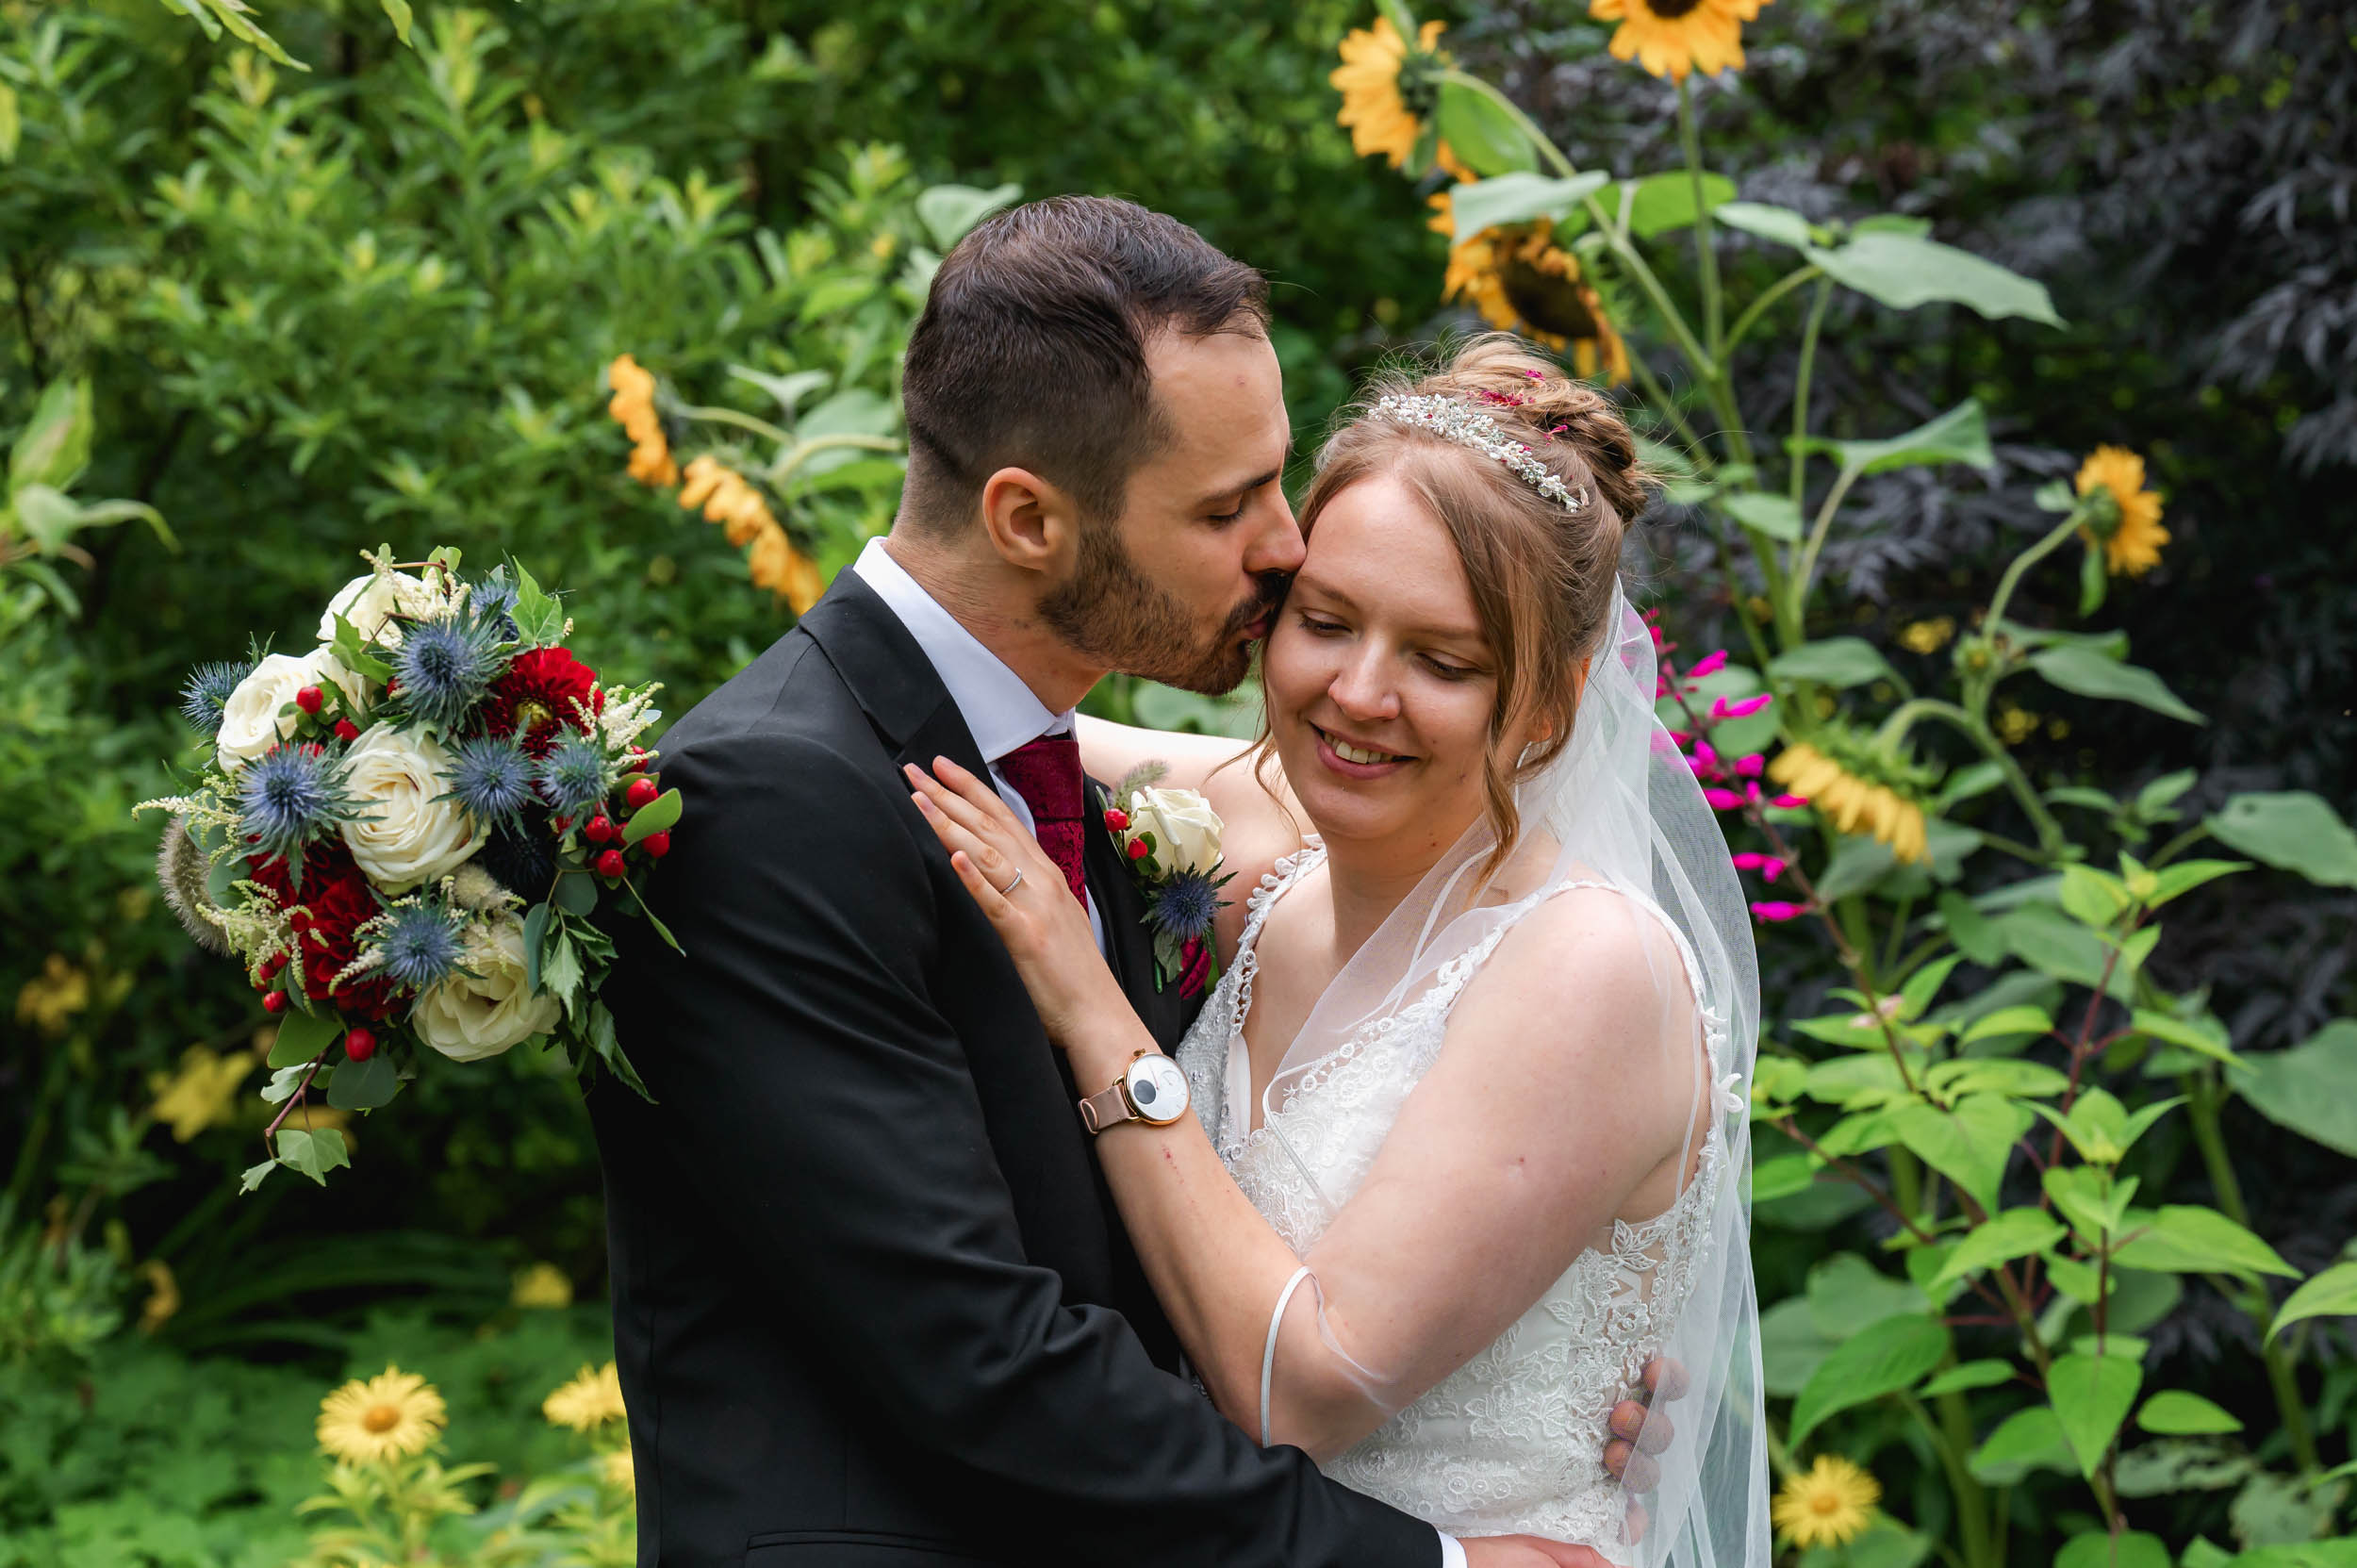 Barnsdale Gardens wedding ceremony – Leanne & Rafal